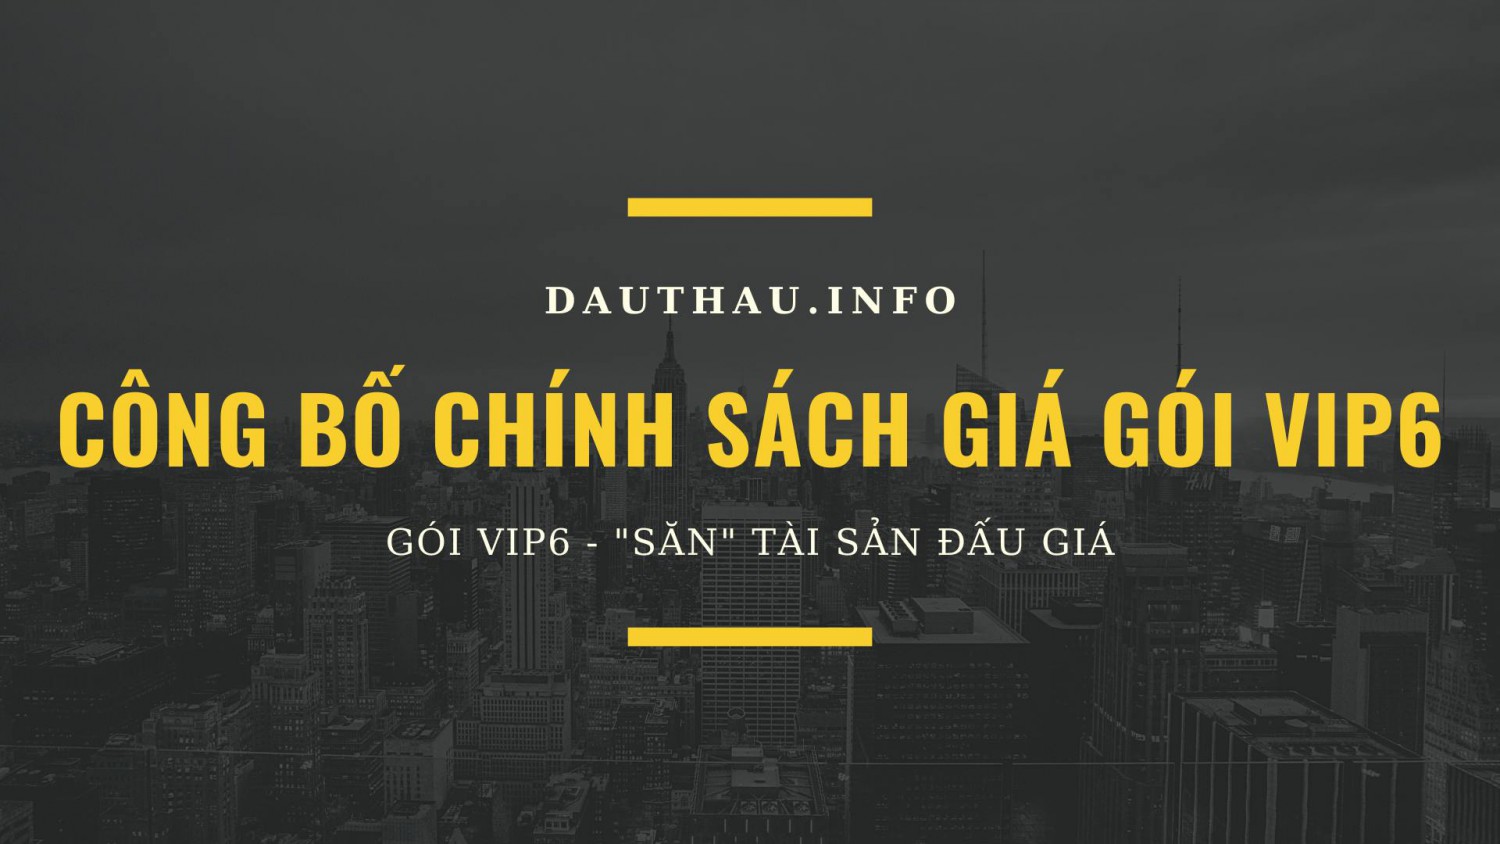 DauThau.info công bố chính sách giá gói VIP6